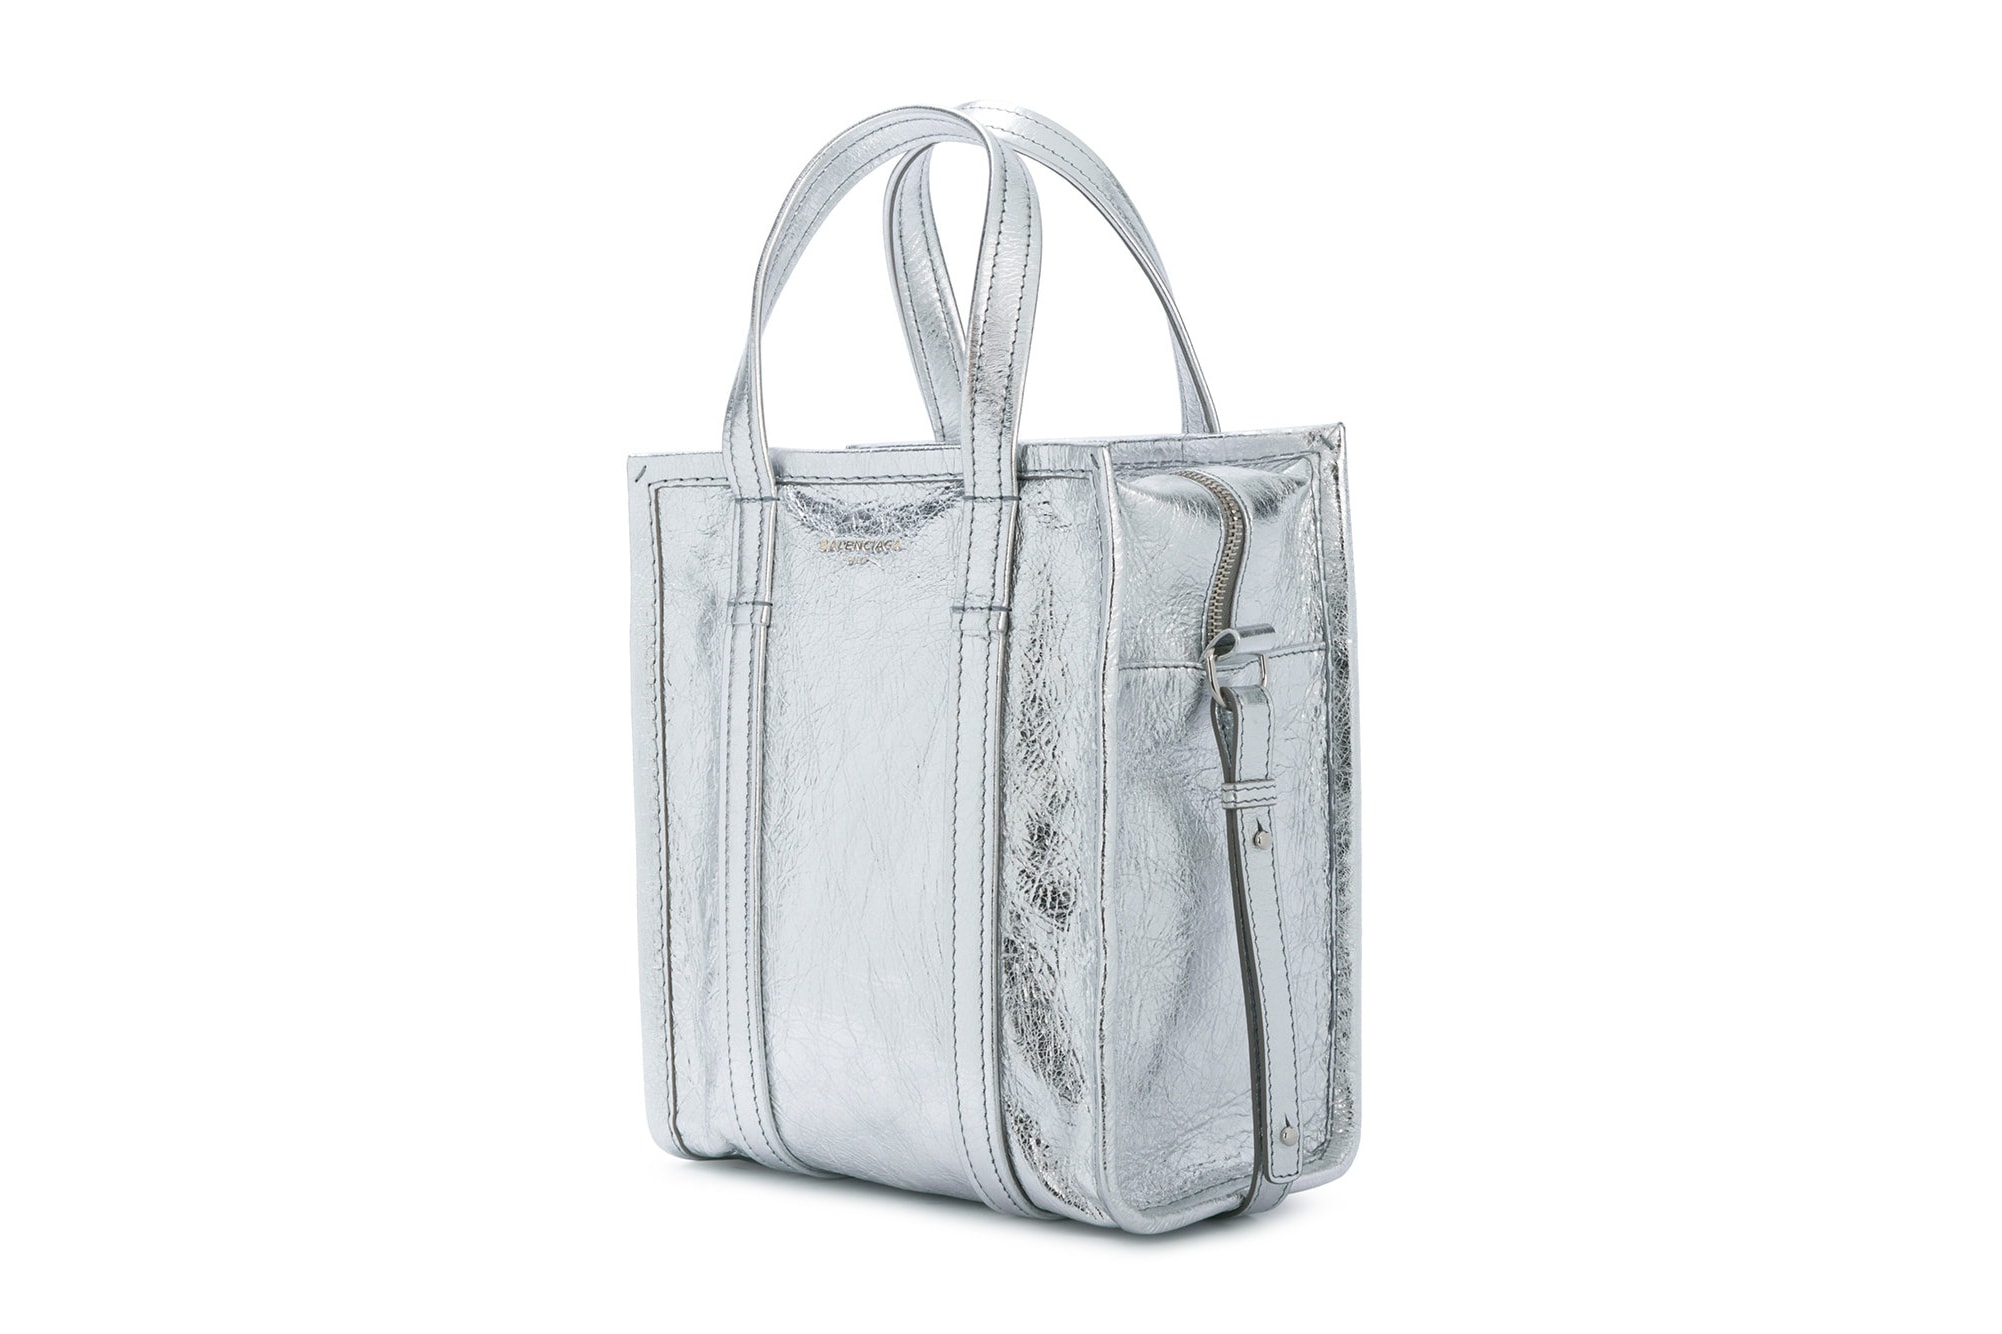 Balenciaga Silver Leather Handbag Tote Demna Gvasalia